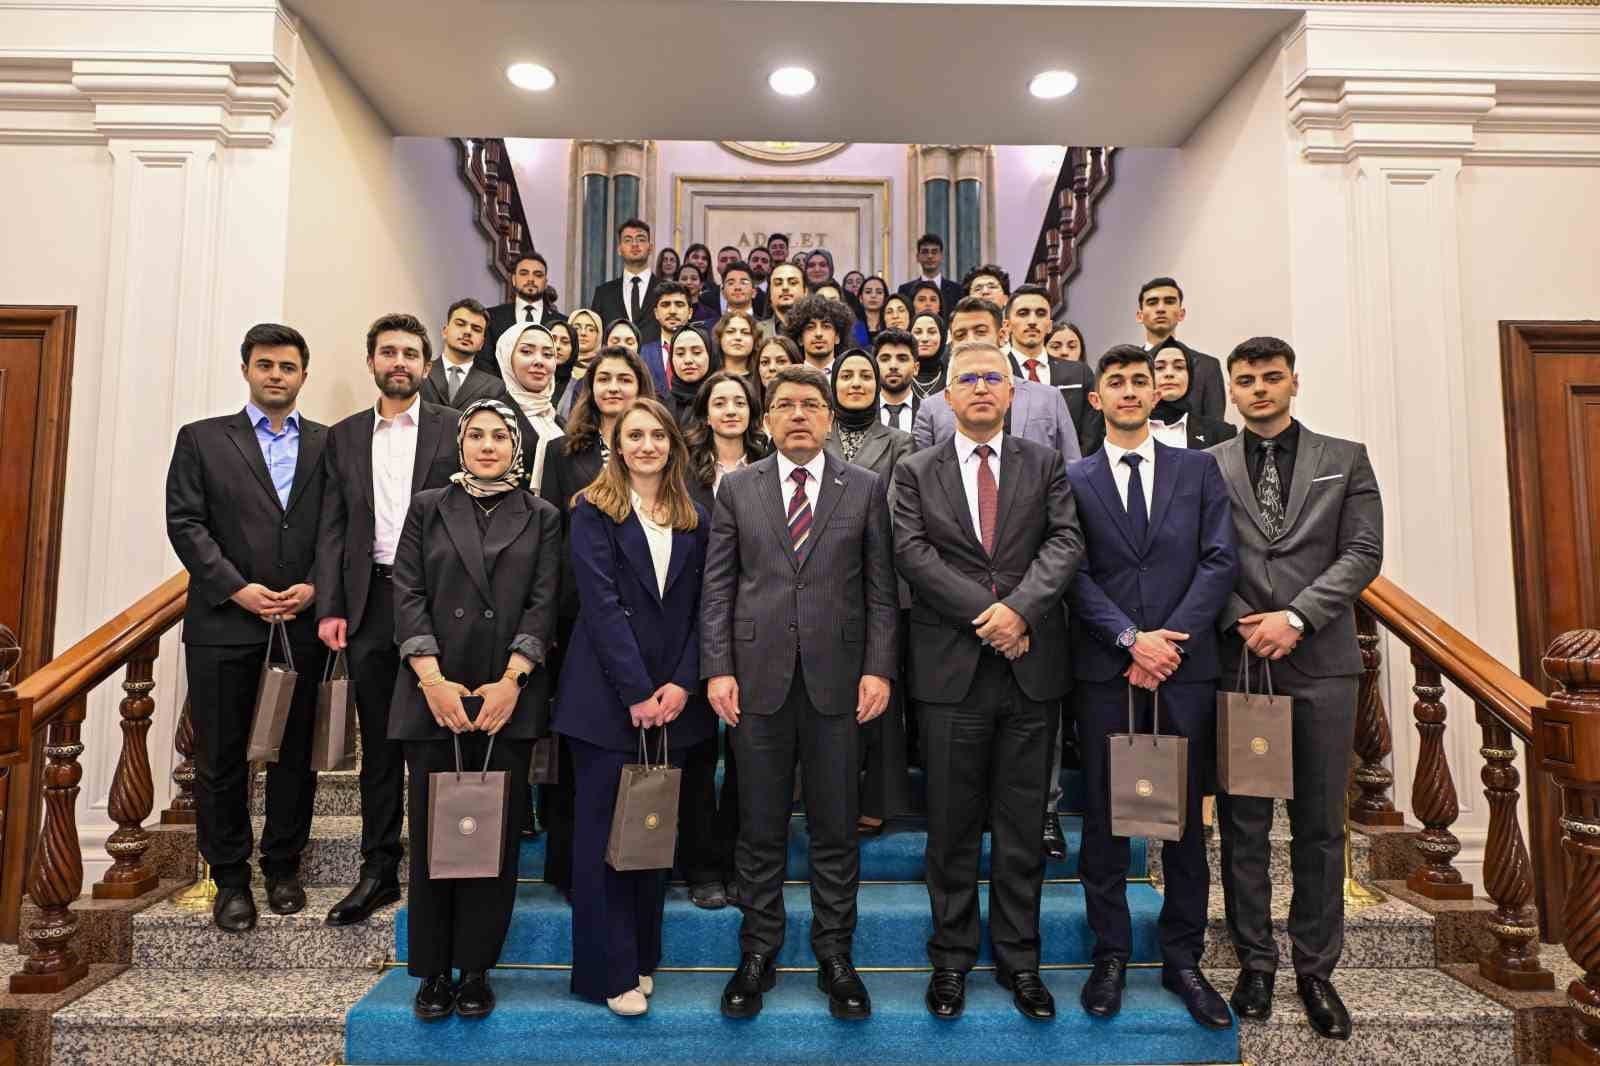 Bakan Tunç Erzurum’dan gelen genç hukukçularla görüştü